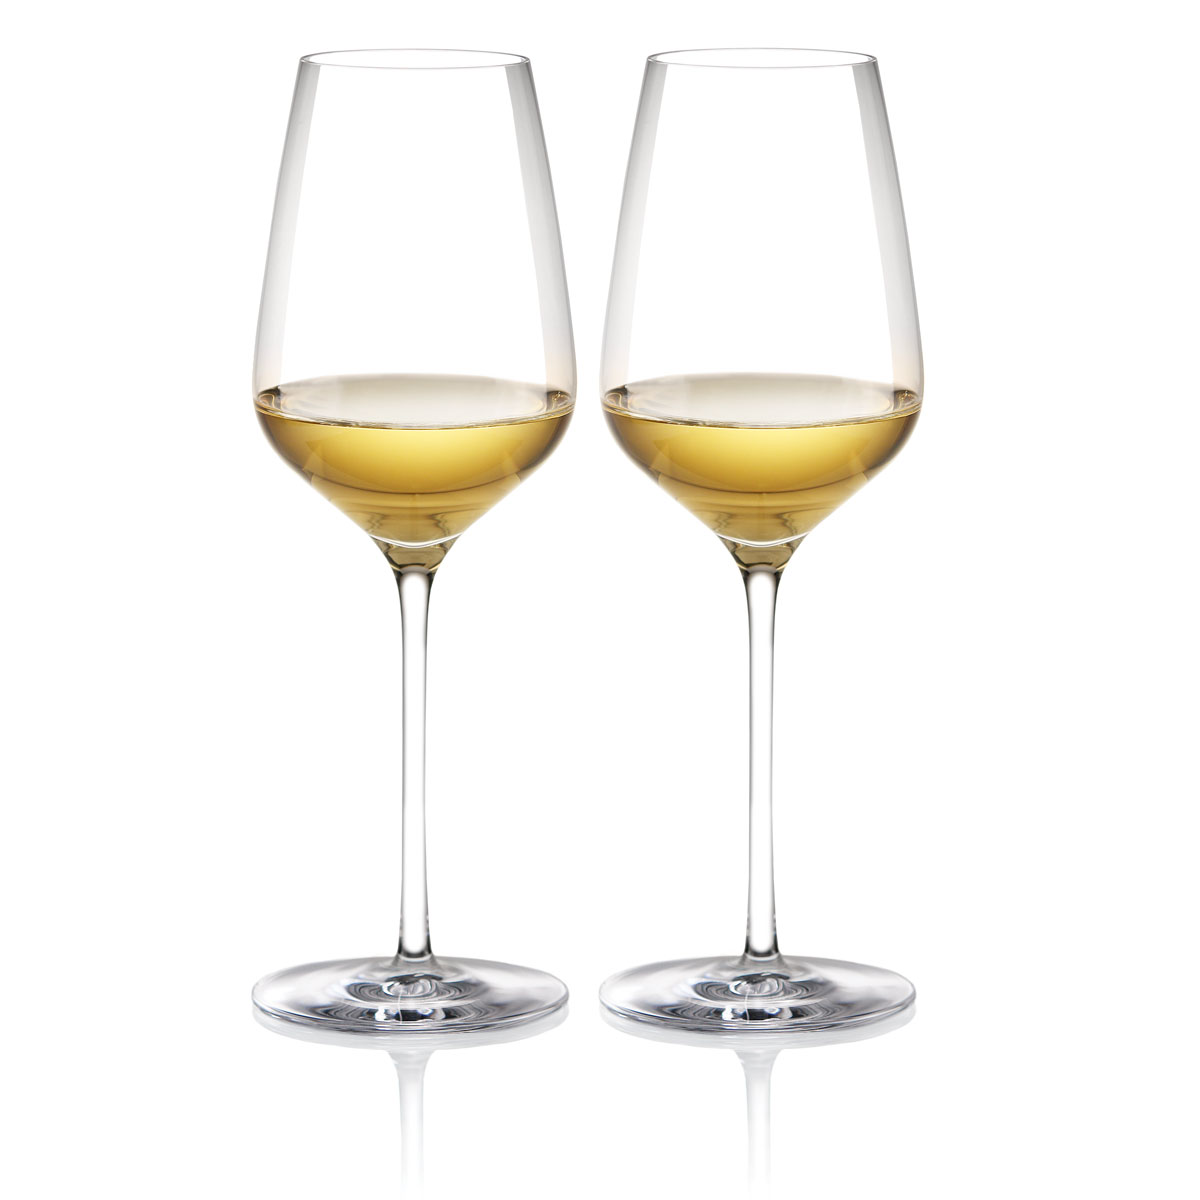 Cashs Ireland Vino Grand Cru White Wine Glasses, Pair